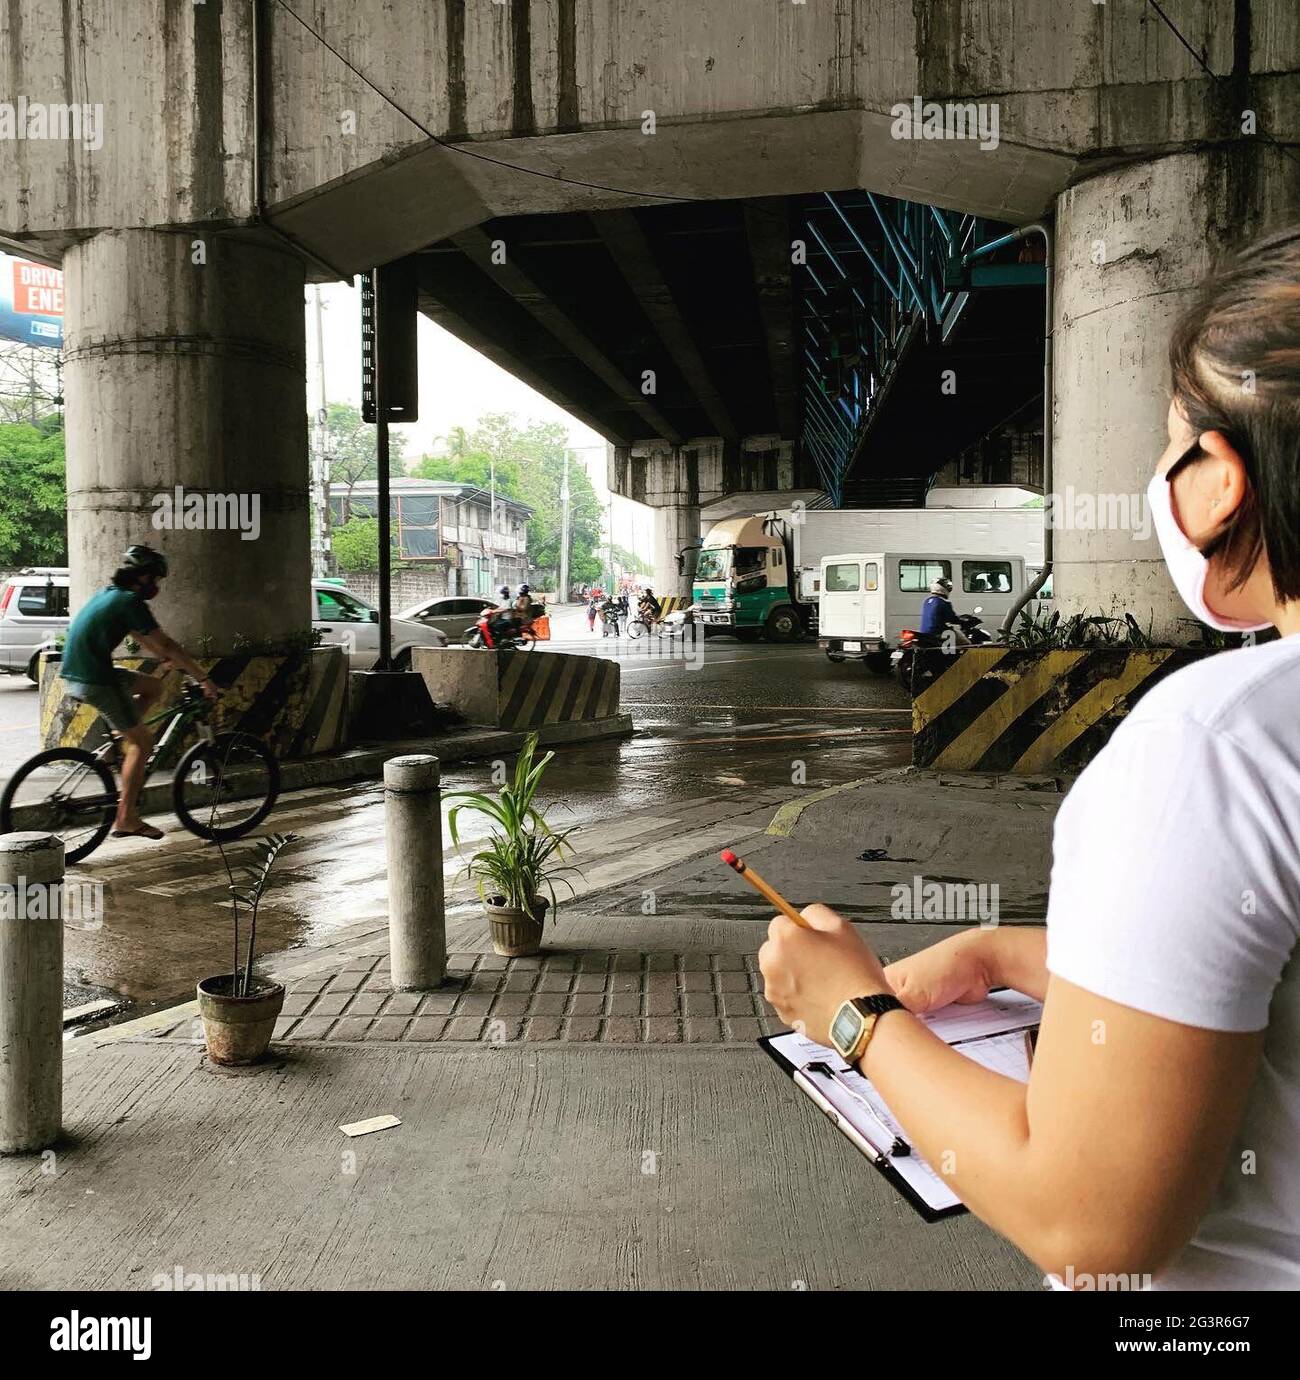 Freiwillige zählen Fahrräder in einigen der verkehrsreichsten Straßen in Metro Manila, während sie Daten gesammelt haben, die helfen werden, die Notwendigkeit für eine sicherere und effizientere Fahrradkultur im Land zu ermitteln. Philippinen. Stockfoto